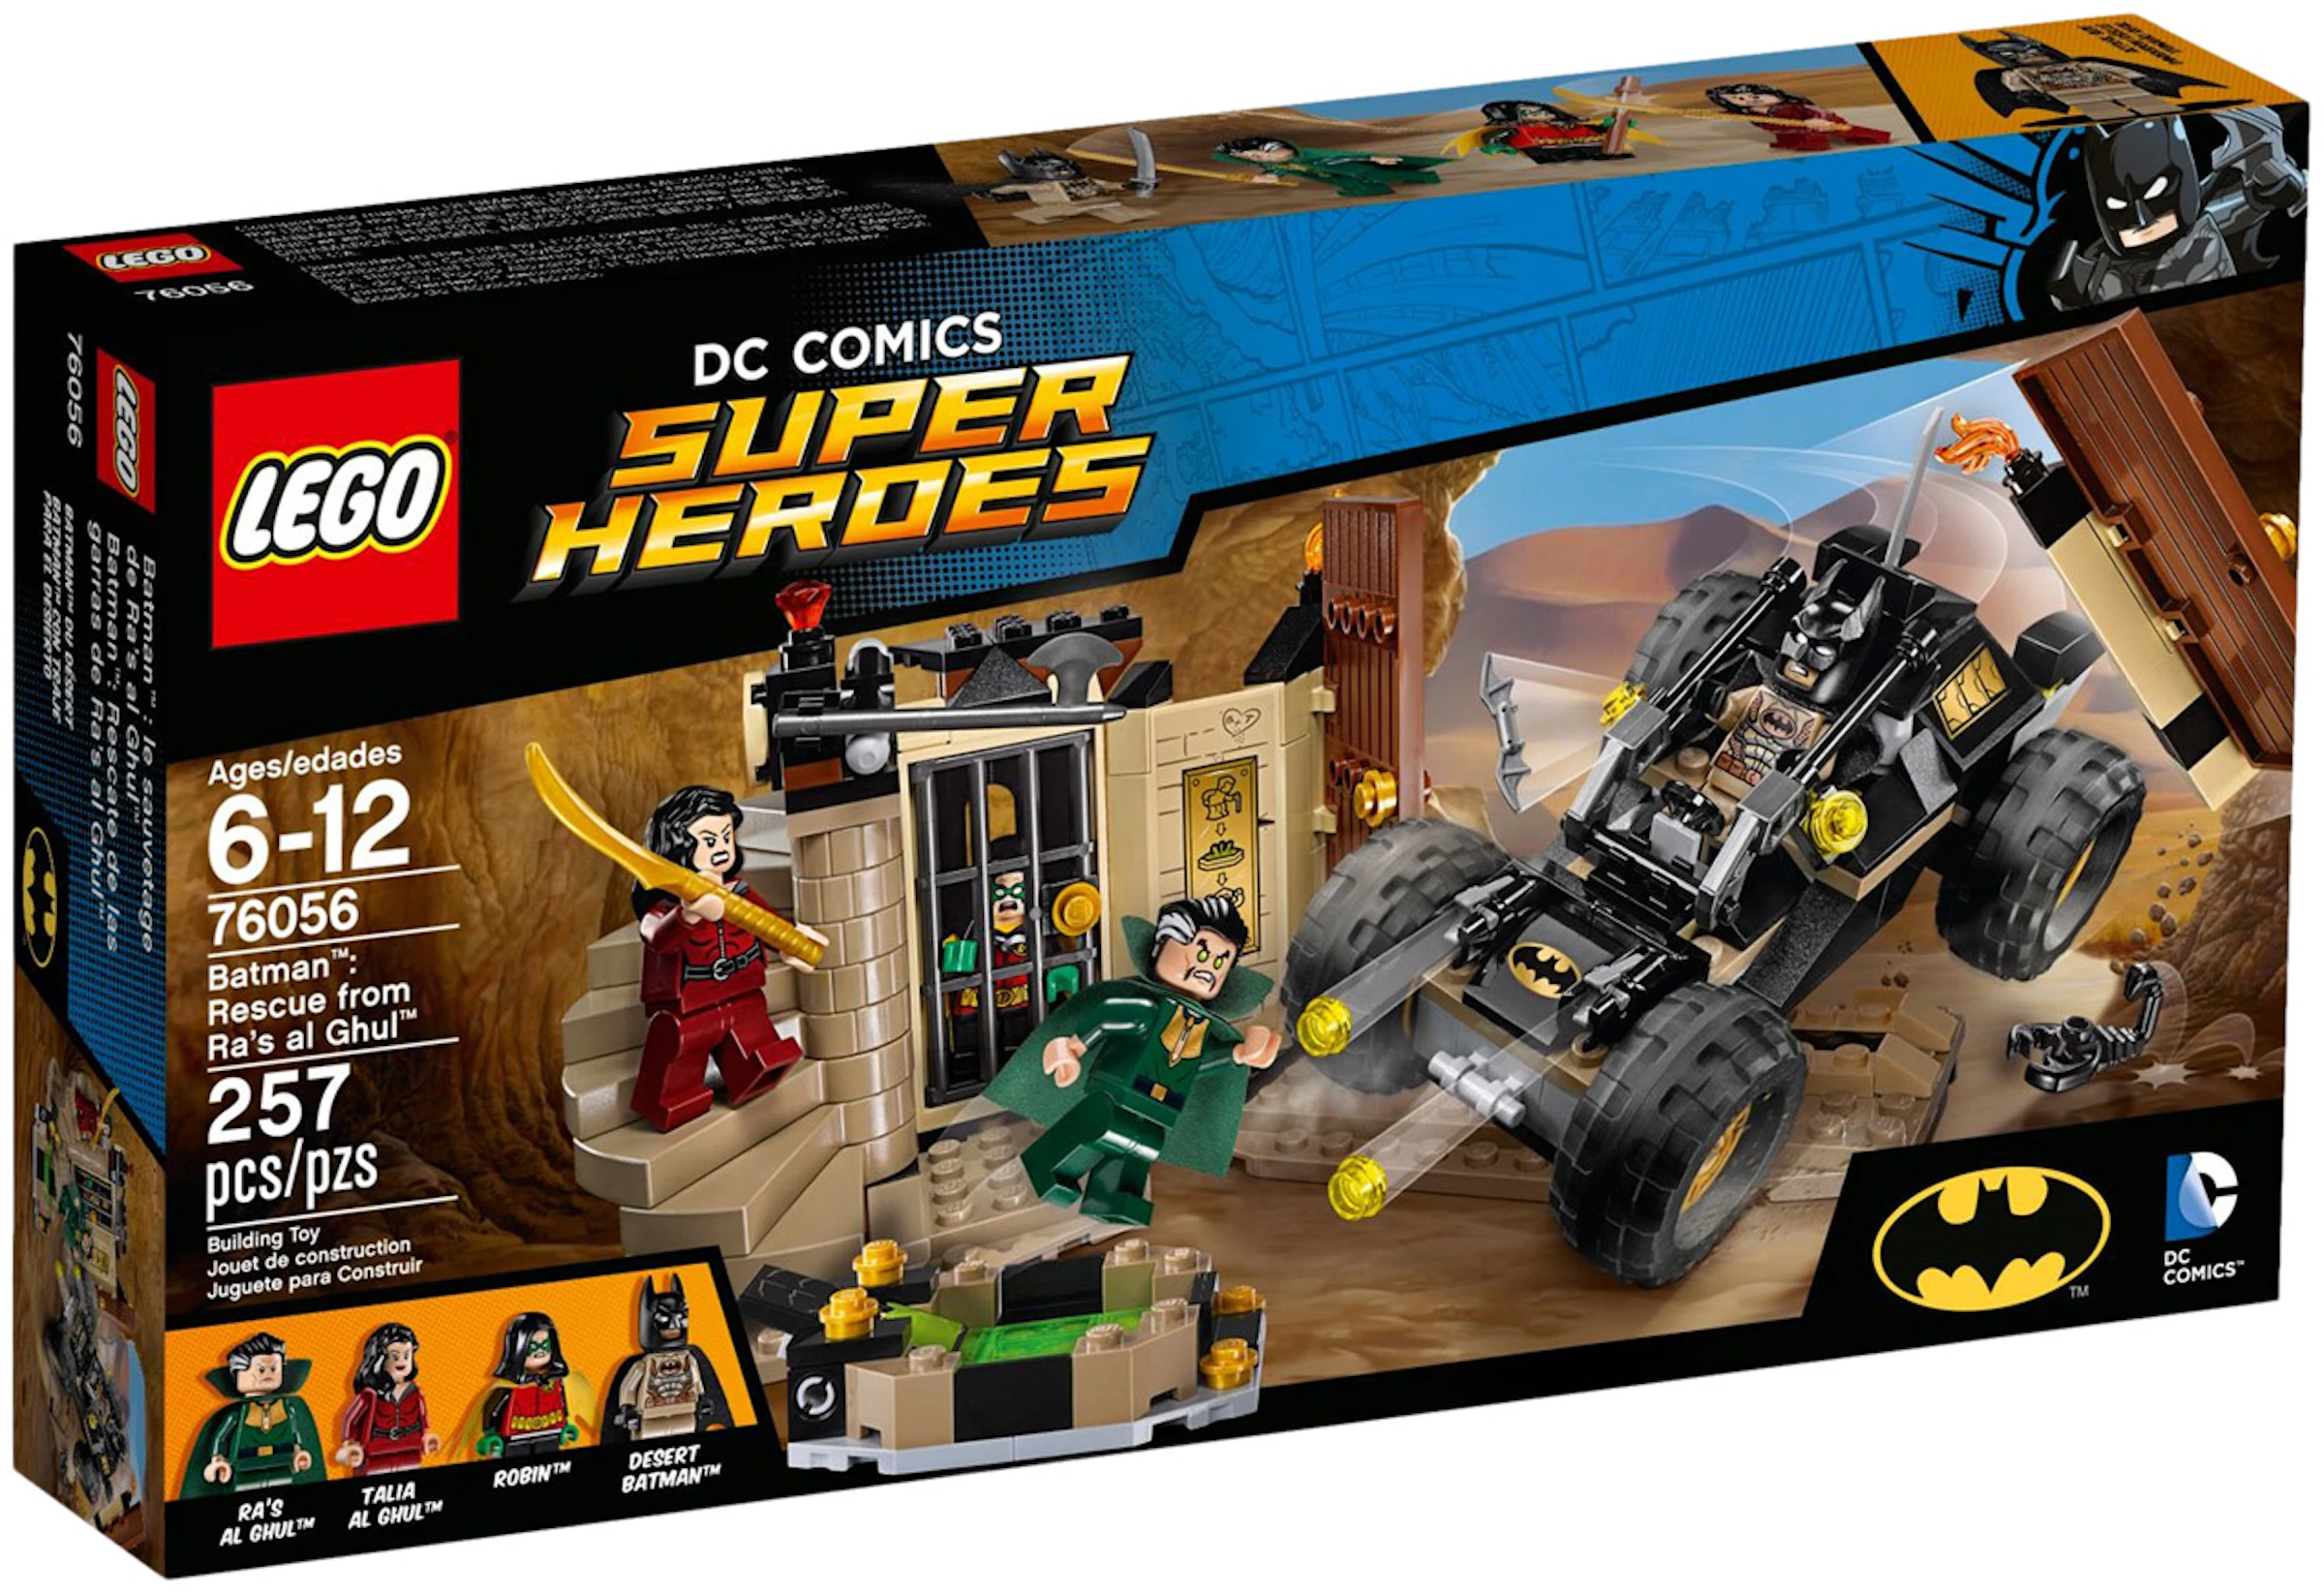 S t Cuervo Delicioso LEGO DC Comics Super Heroes Batman: Rescue from Ra's al Ghul Set 76056 -  SS16 - ES